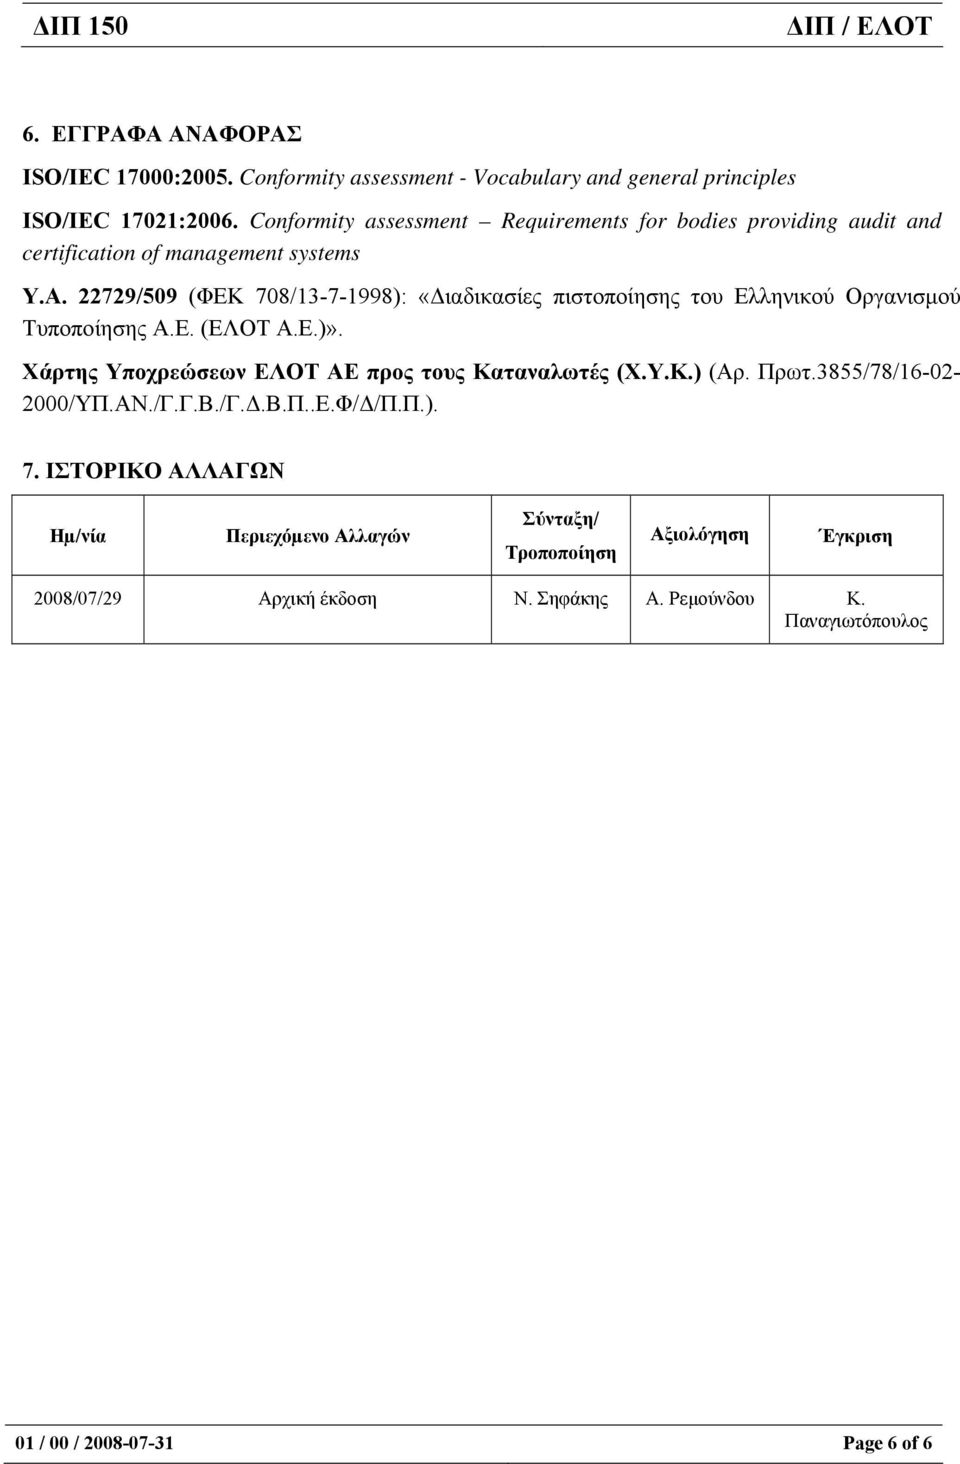 22729/509 (ΦΕΚ 708/13-7-1998): «ιαδικασίες πιστοποίησης του Ελληνικού Οργανισµού Τυποποίησης Α.Ε. (ΕΛΟΤ Α.Ε.)».